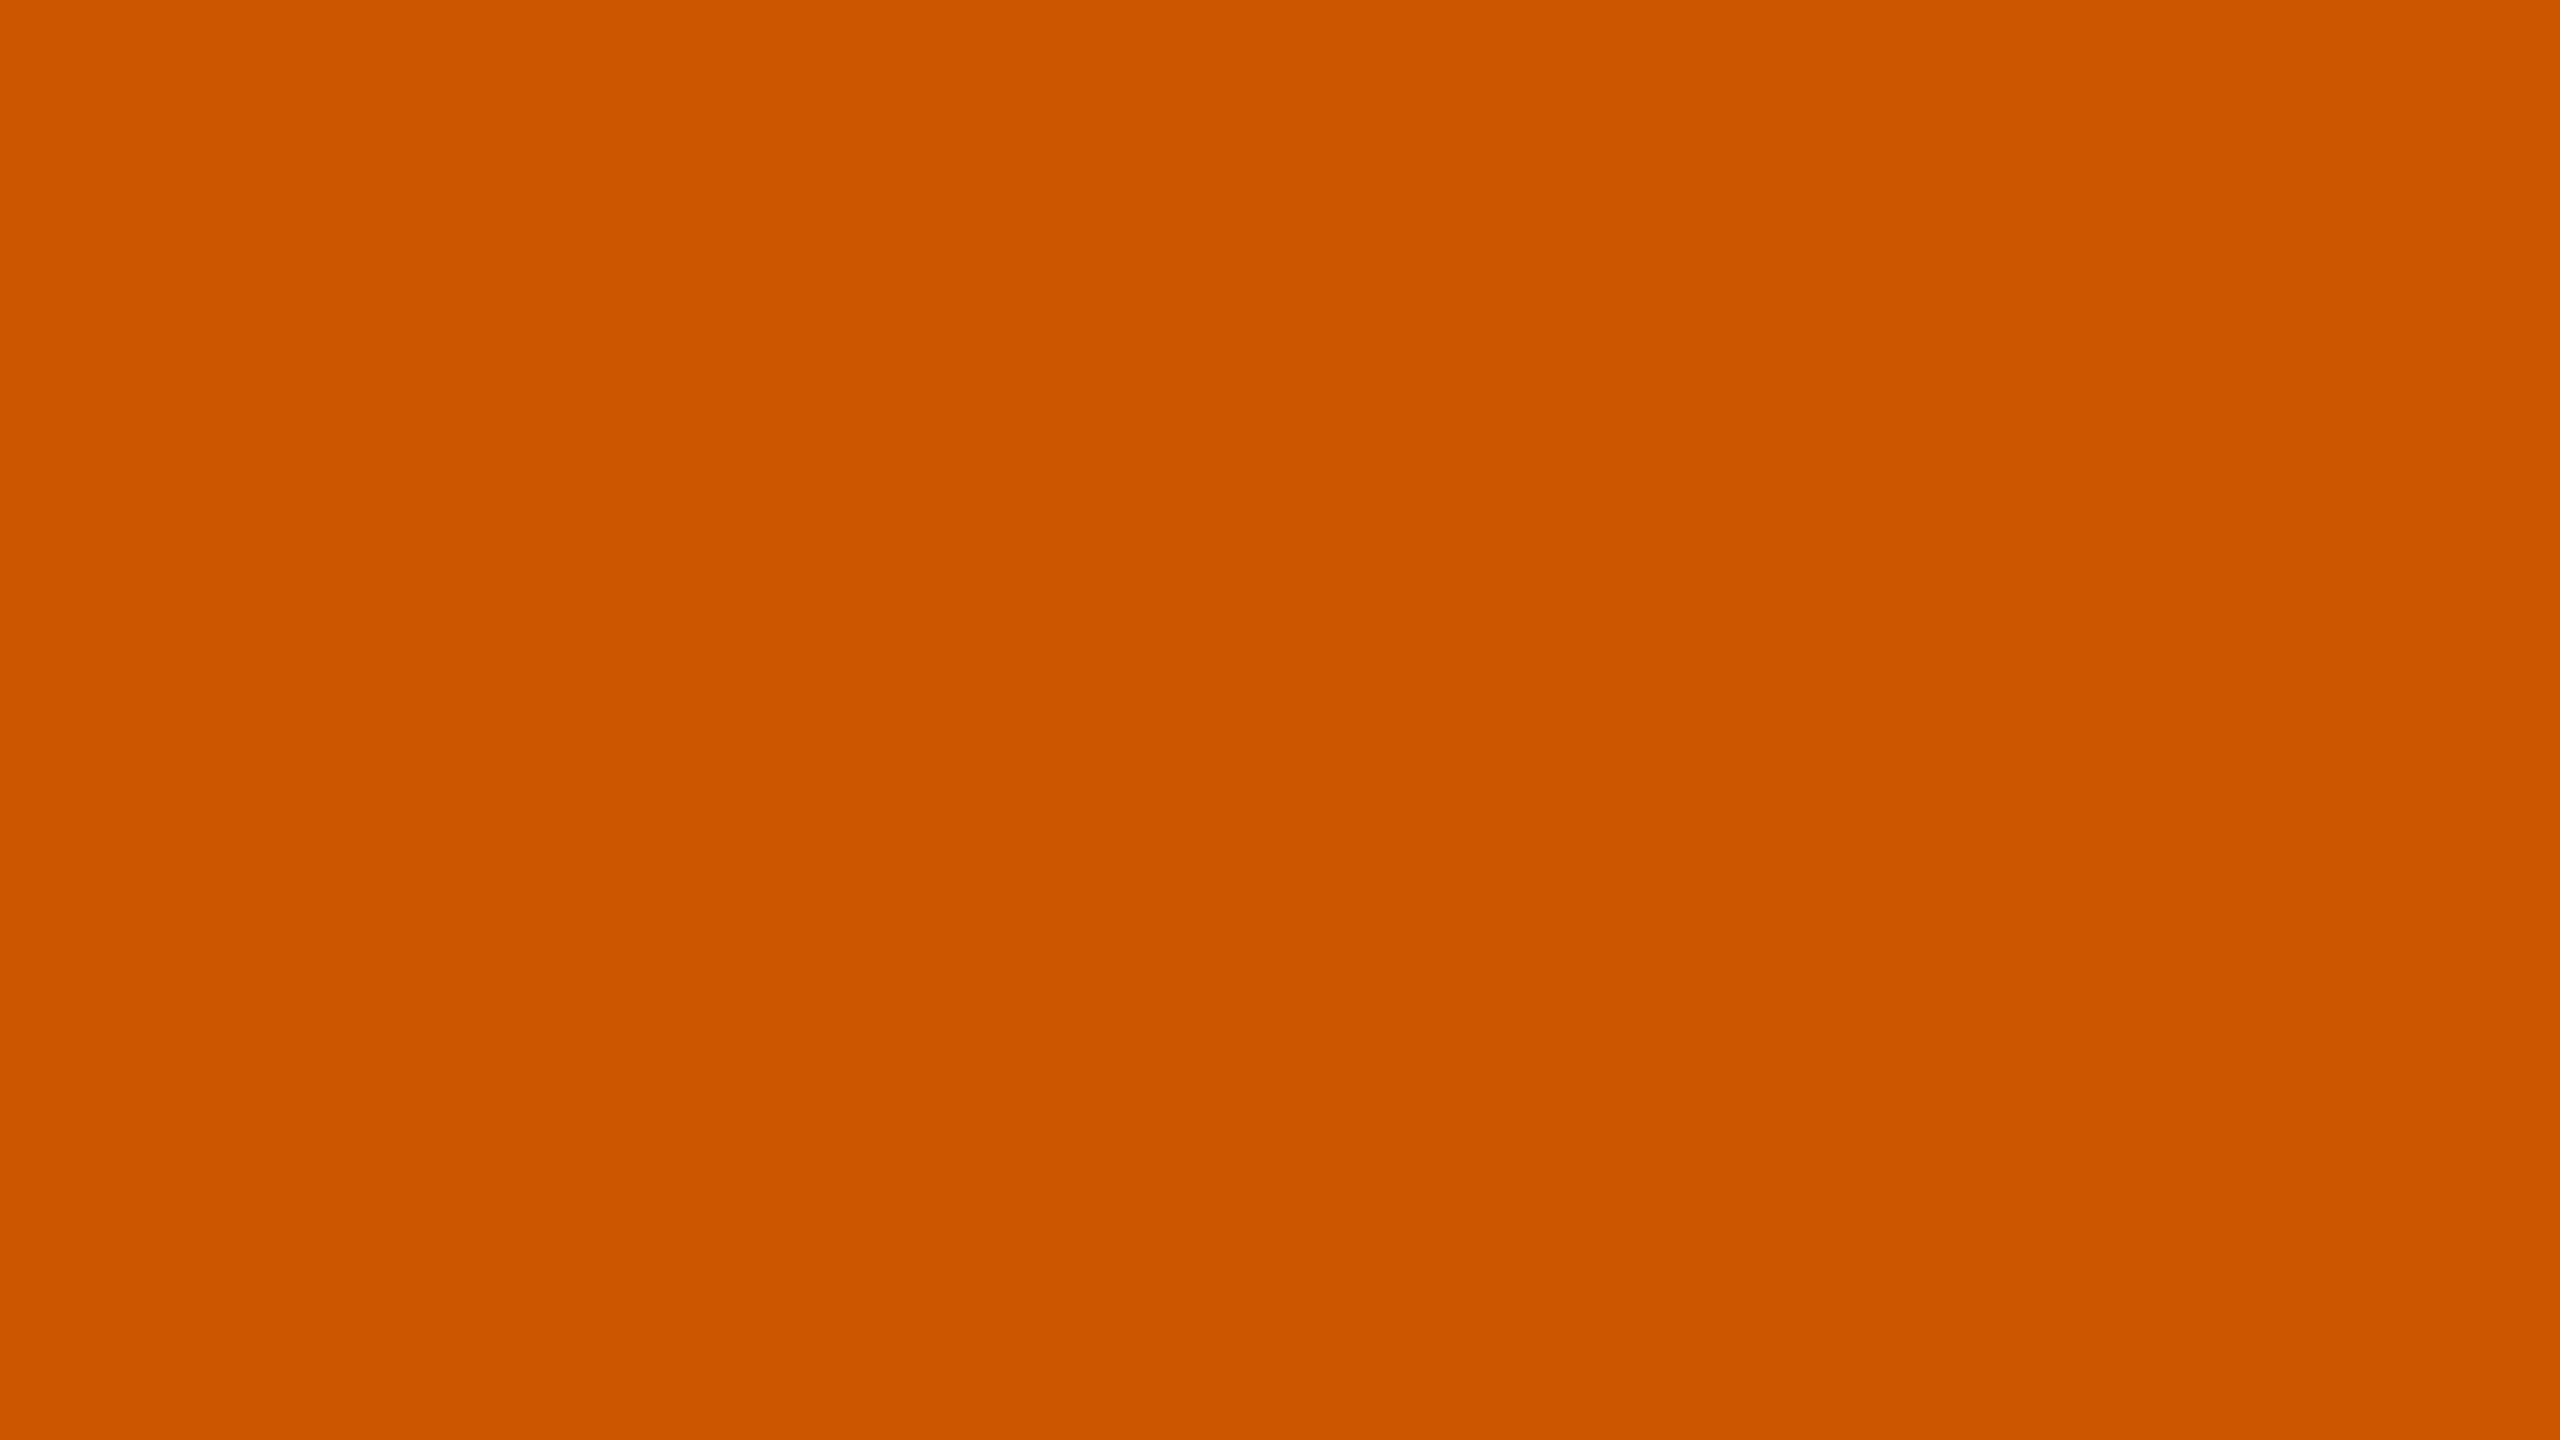 2560 x 1440 · jpeg - Free Resolution Burnt Orange Solid Color Background, - Fiserv Orange ...